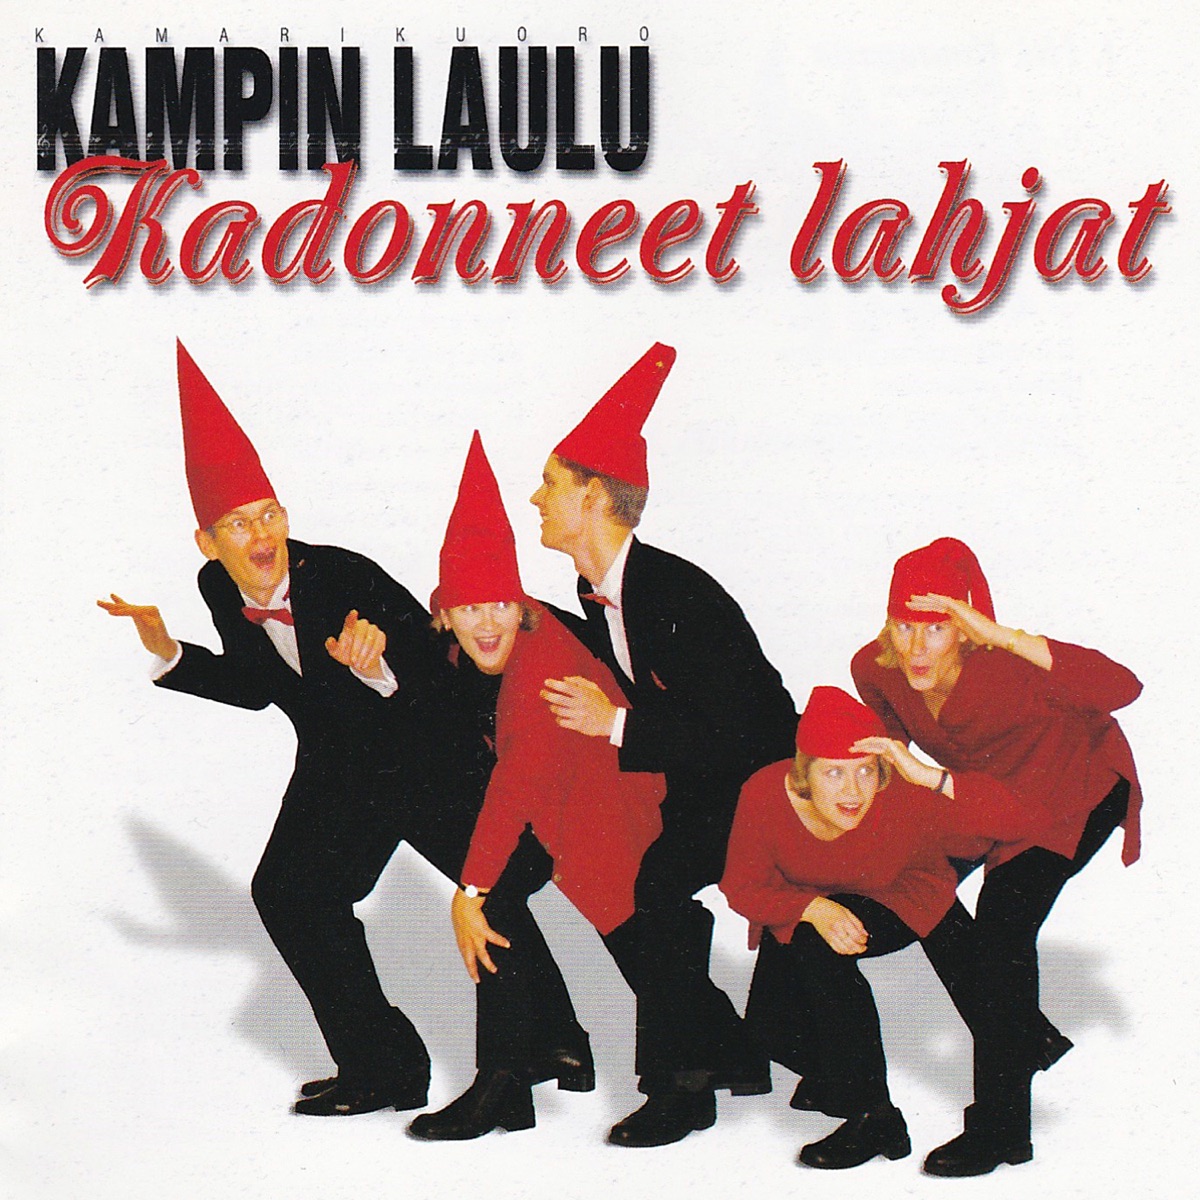 Kadonneet lahjat - Album by Kampin Laulu Chamber Choir - Apple Music